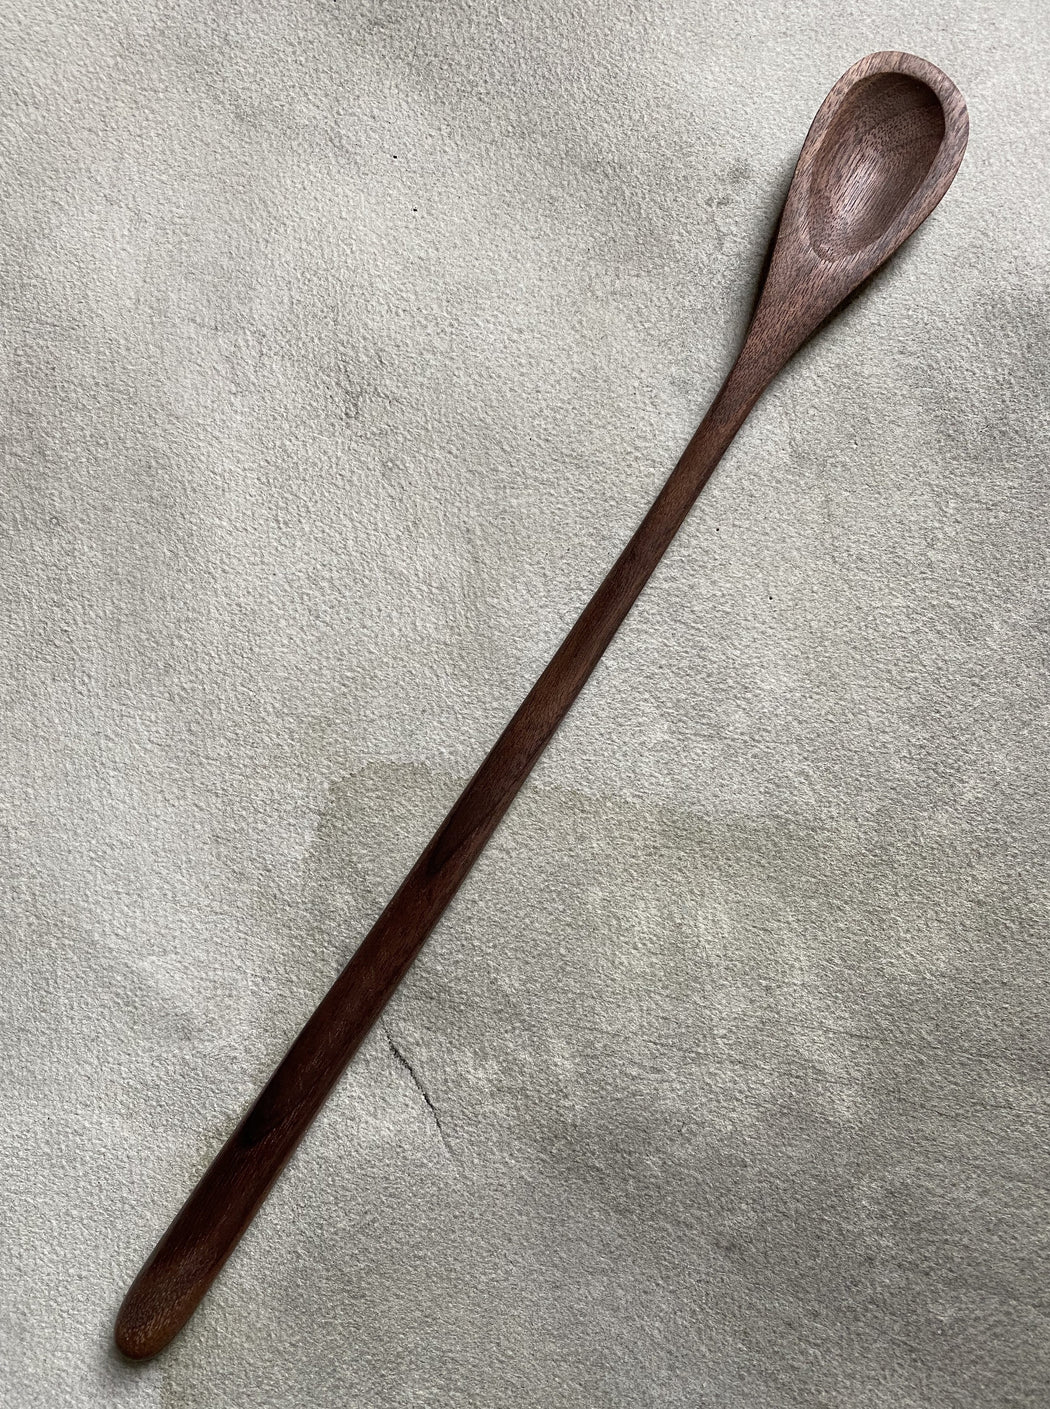 Hand-Carved Stir Spoon - Walnut